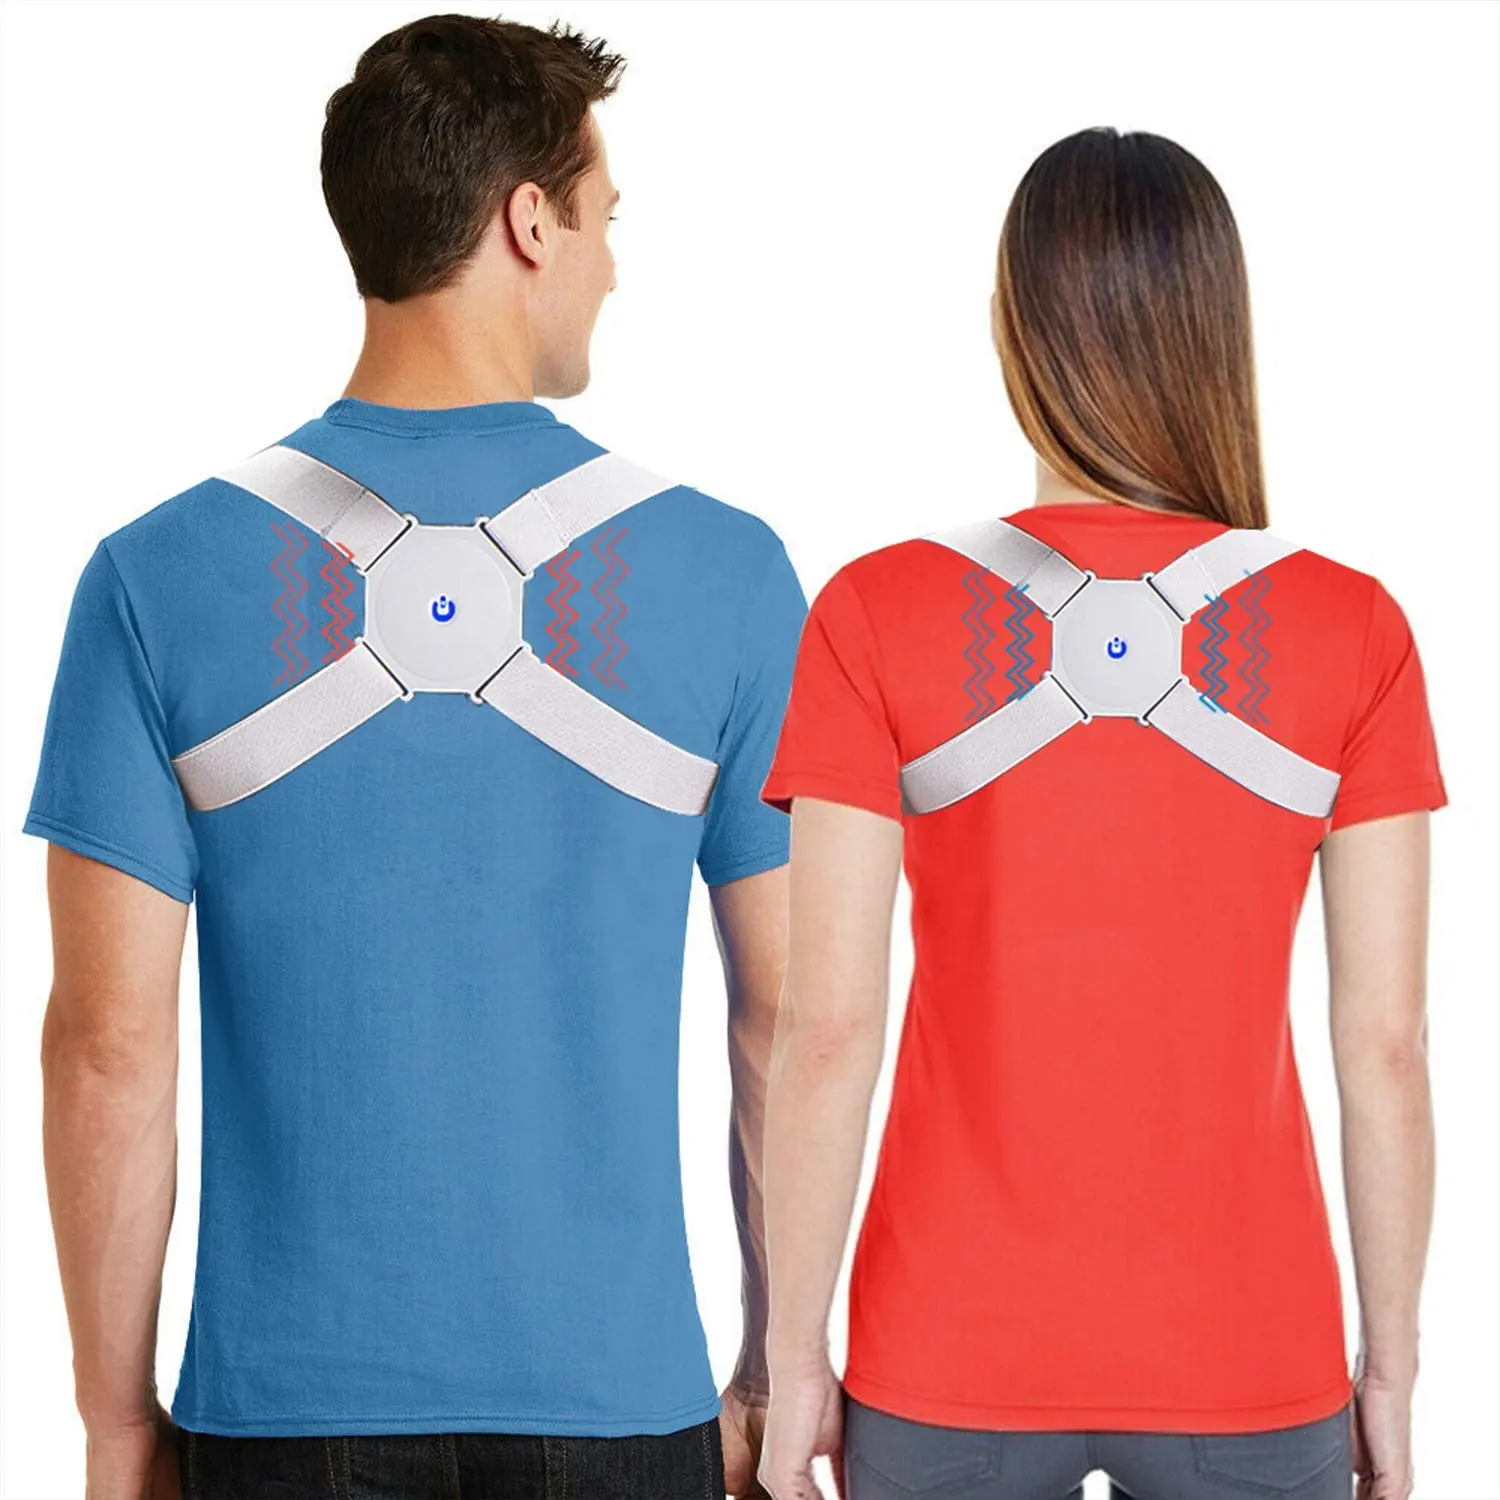 Hot Sale Smart Back Posture Corrector Adjustable Brace Shoulder Corrector Vibration Posture Corrector for Men and Women